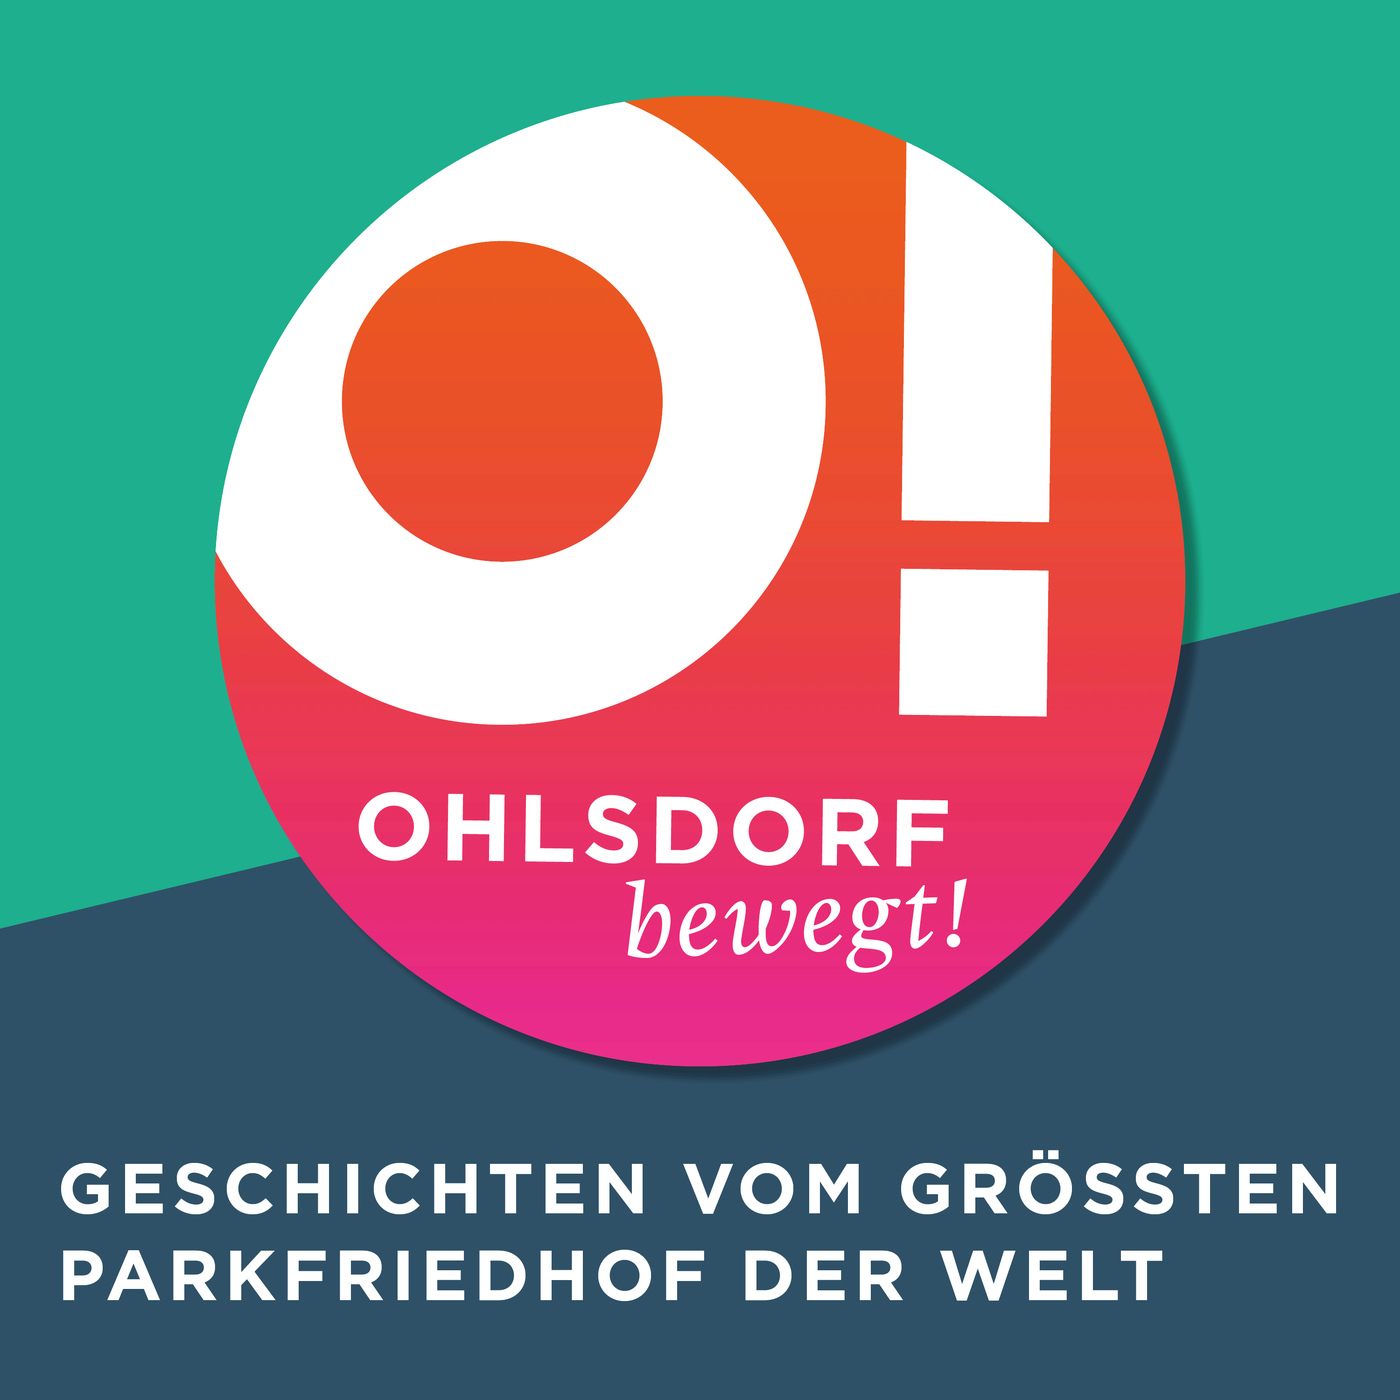 Ohlsdorf bewegt